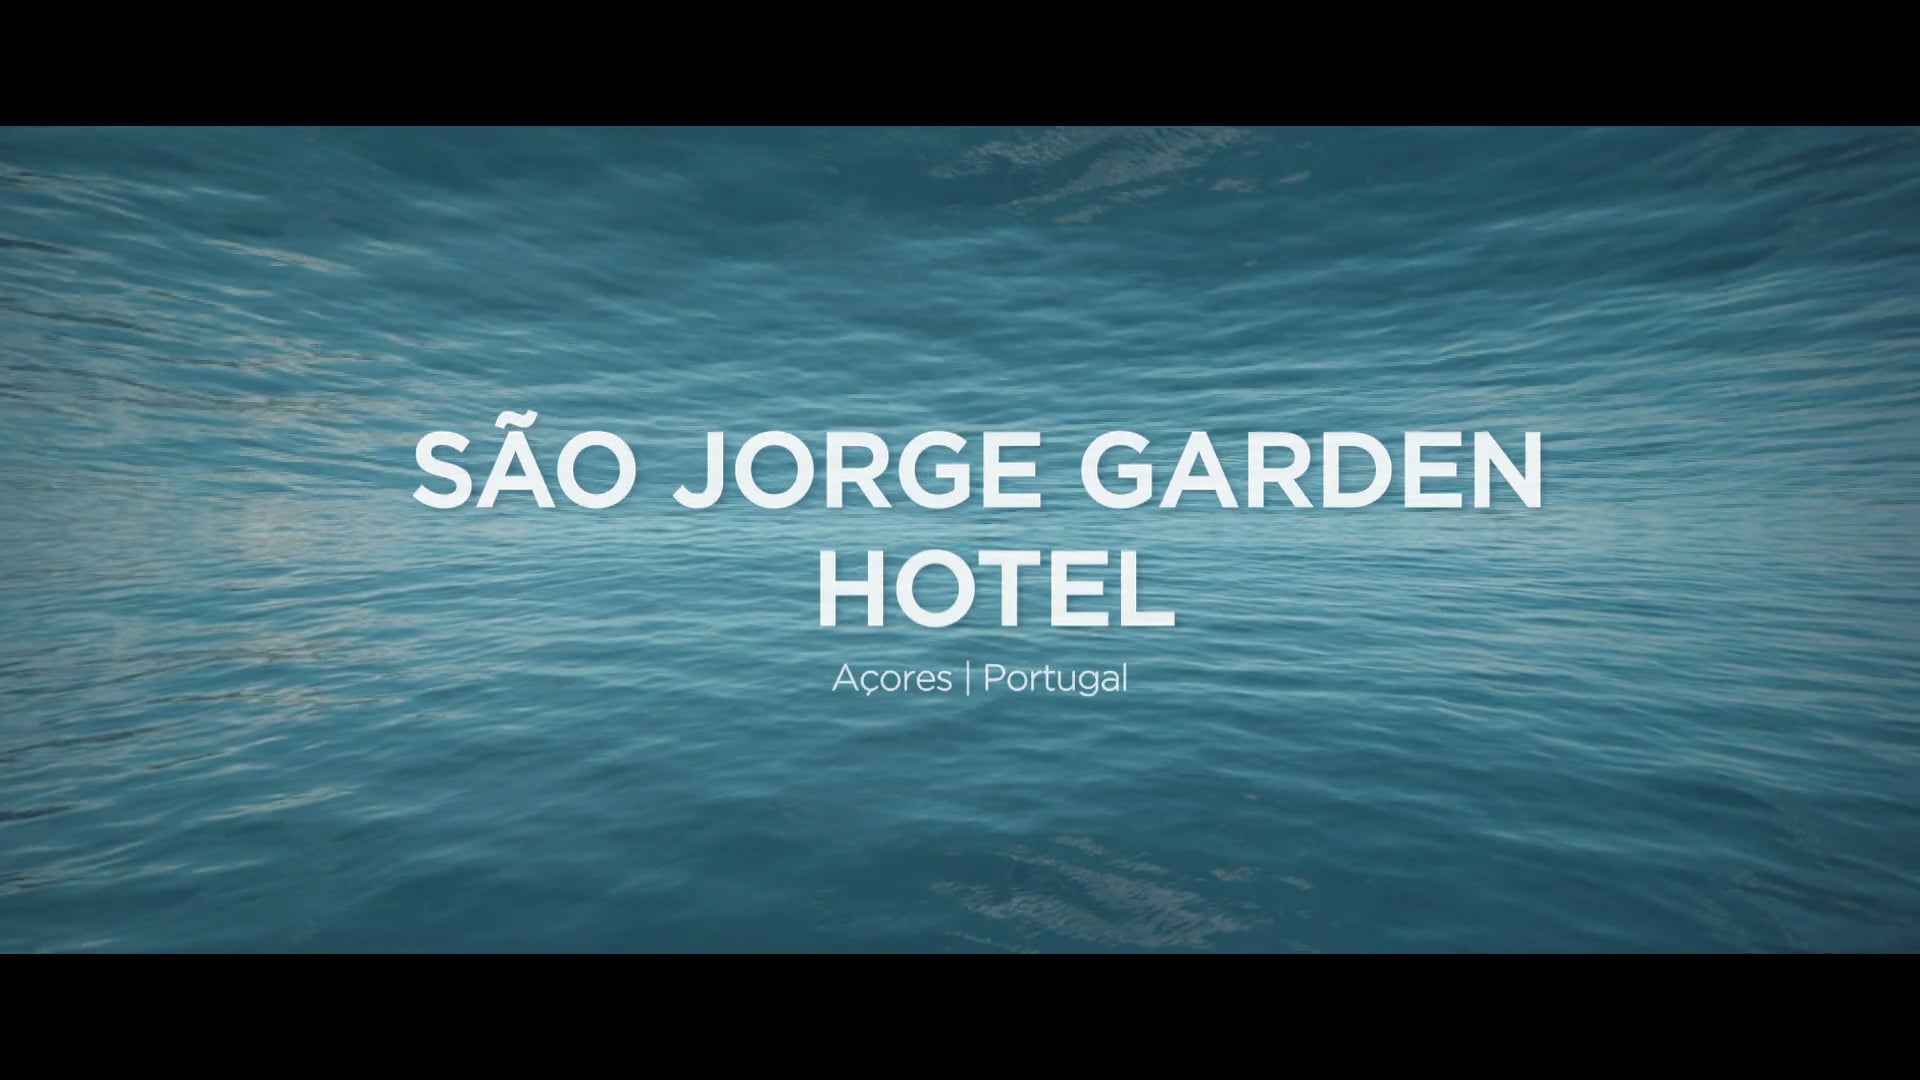 SÃO JORGE GARDEN  Hotel - Promotional Film